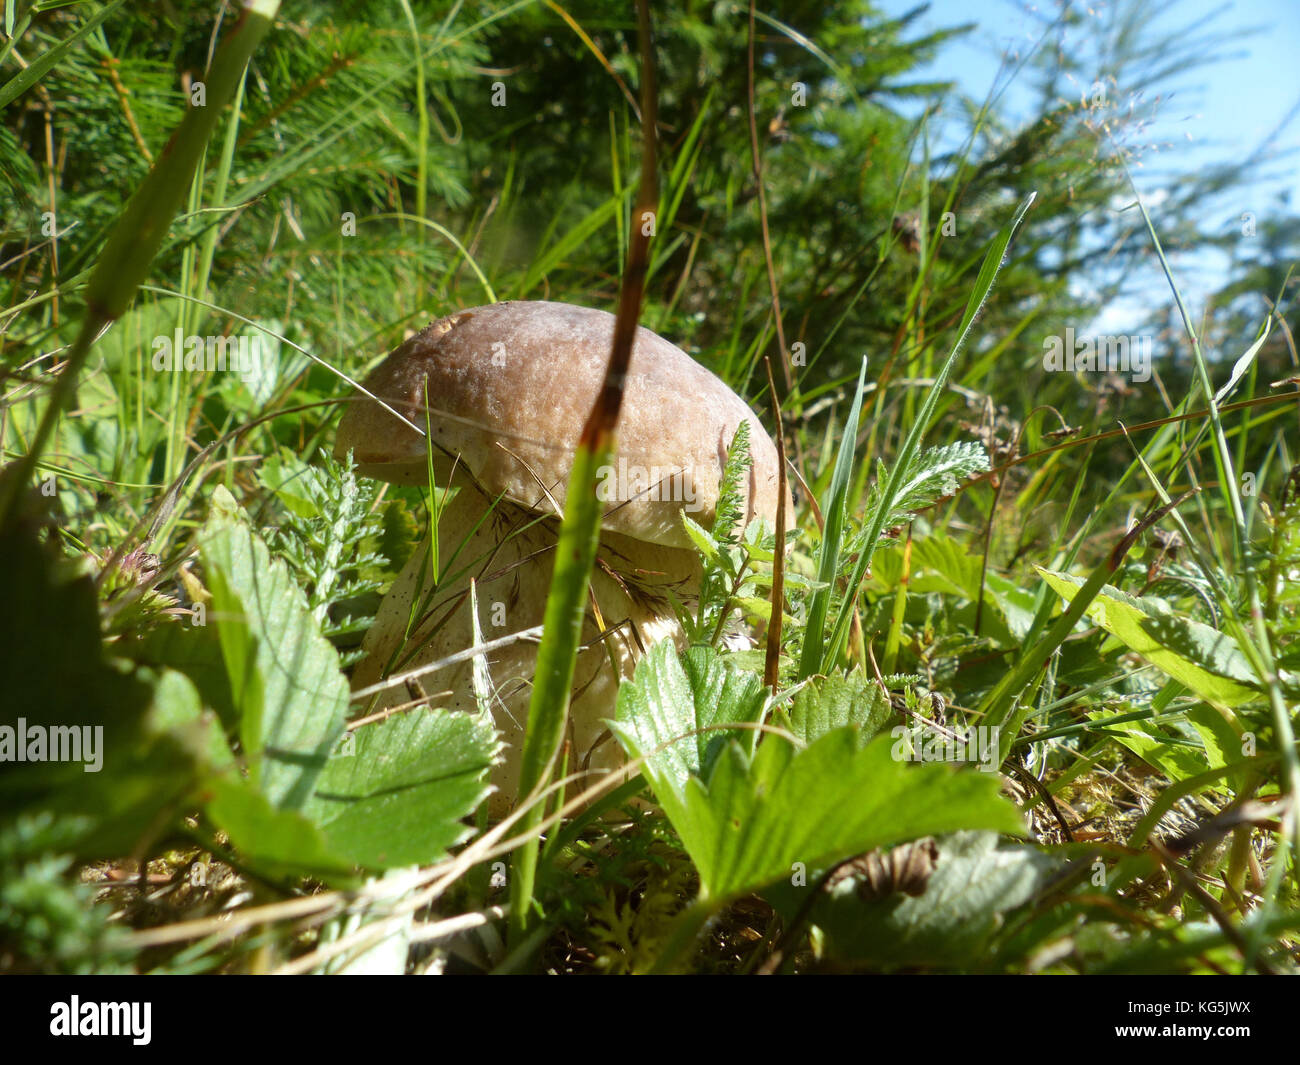 La culture des champignons sauvages dans l'herbe, la cueillette de champignons sauvages est un passe-temps national en République tchèque Banque D'Images